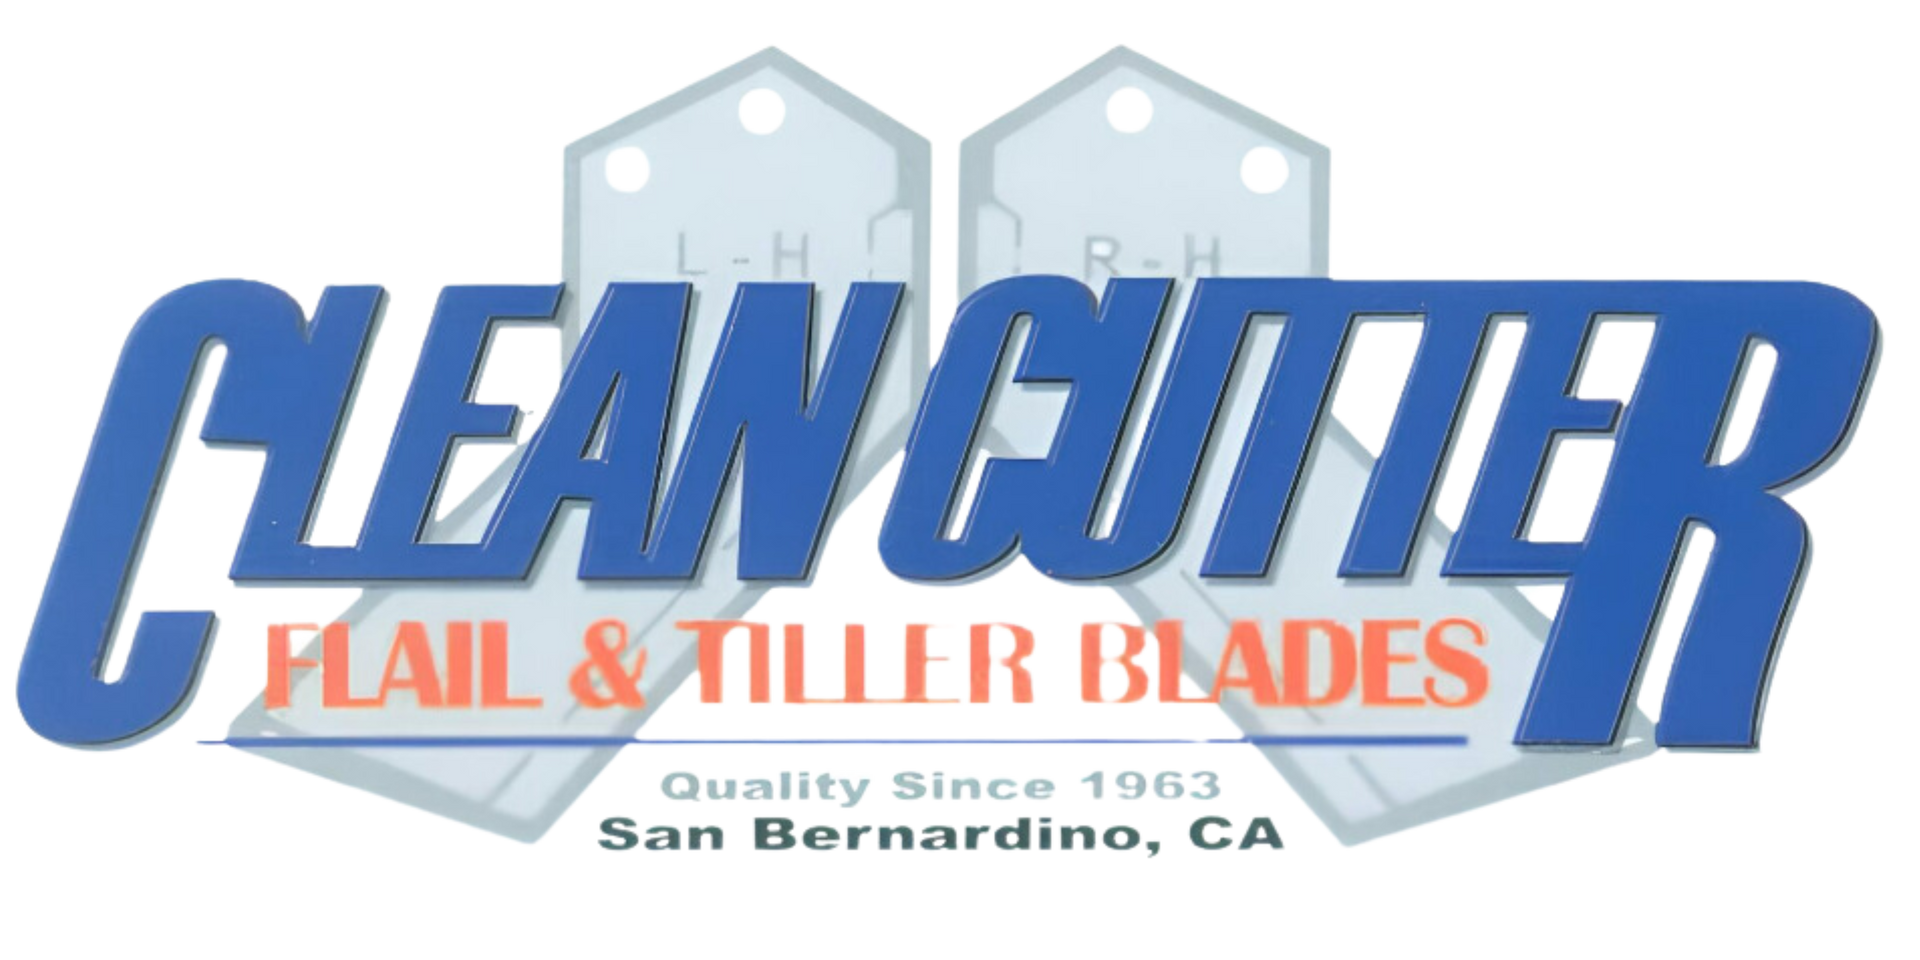 Clean Cutter Flail & Tiller Blades logo